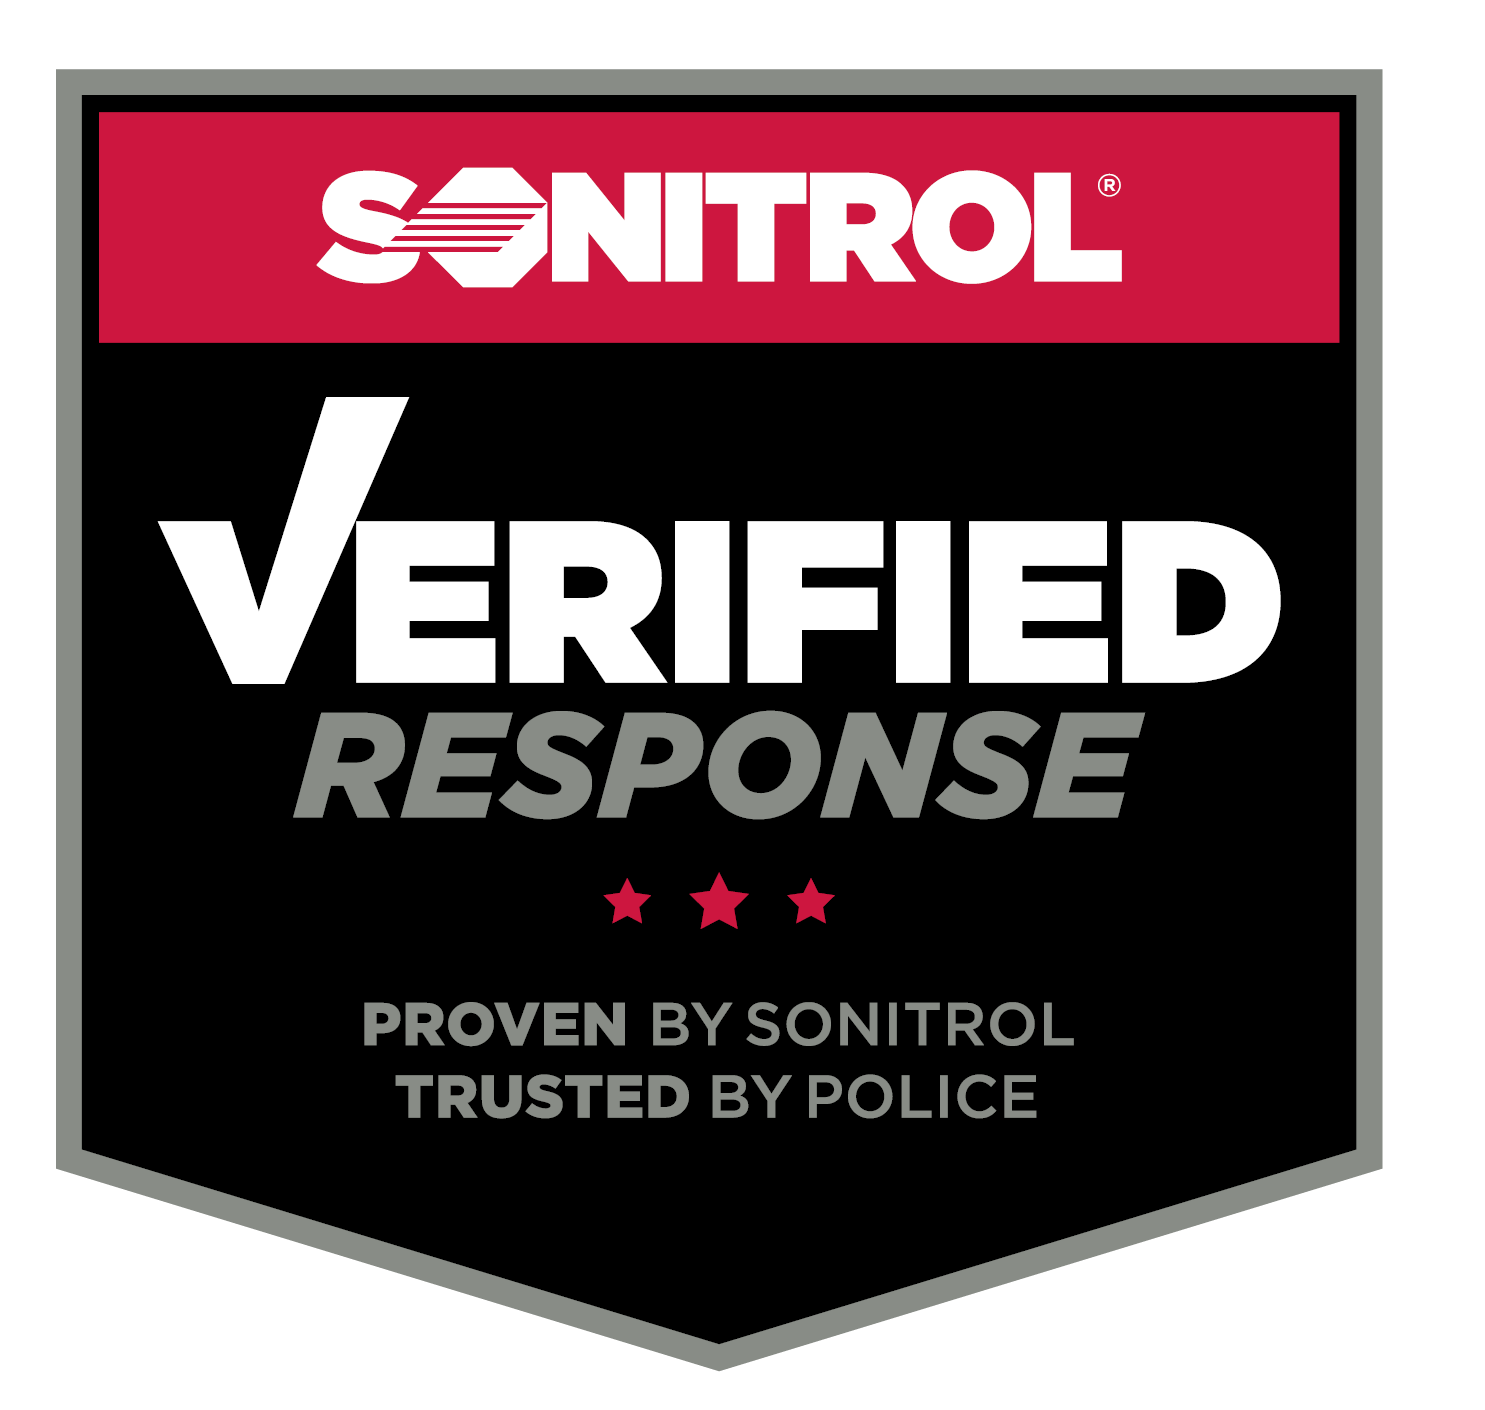 sonitrol-verified-response-logo